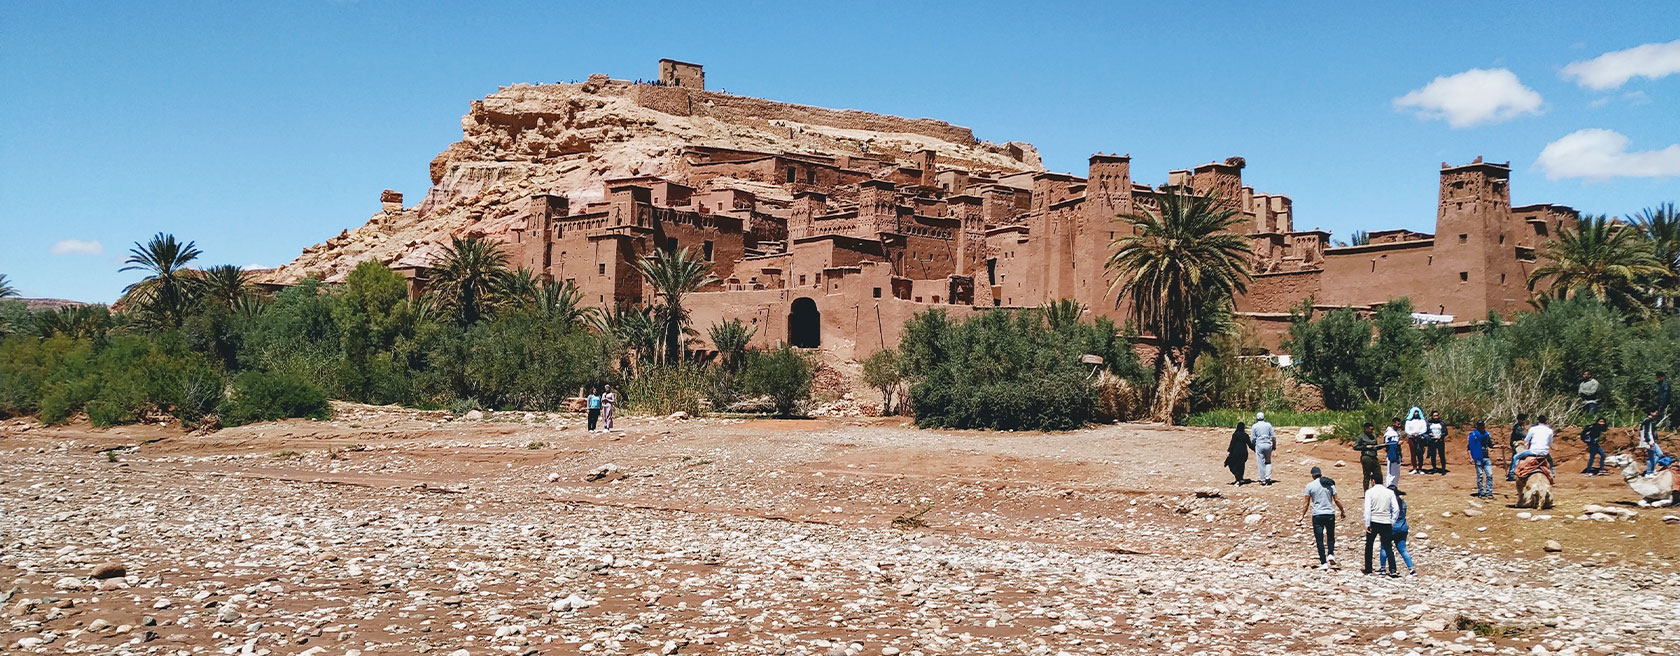 excursion ait ben haddou y ouarzazate desde marrakech